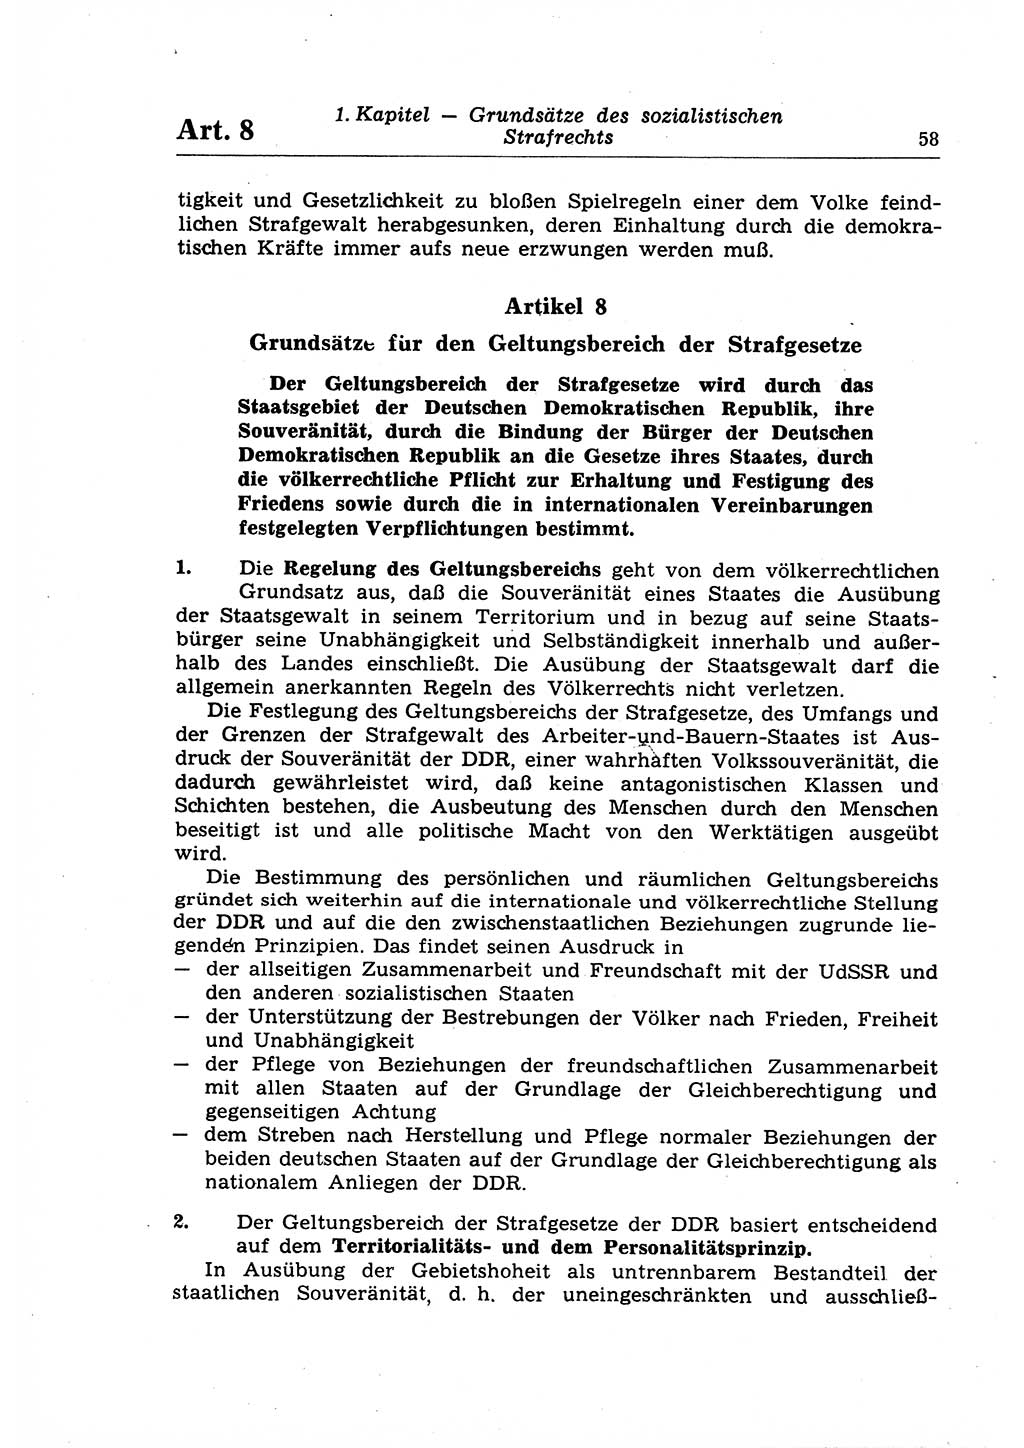 Strafrecht der Deutschen Demokratischen Republik (DDR), Lehrkommentar zum Strafgesetzbuch (StGB), Allgemeiner Teil 1969, Seite 58 (Strafr. DDR Lehrkomm. StGB AT 1969, S. 58)